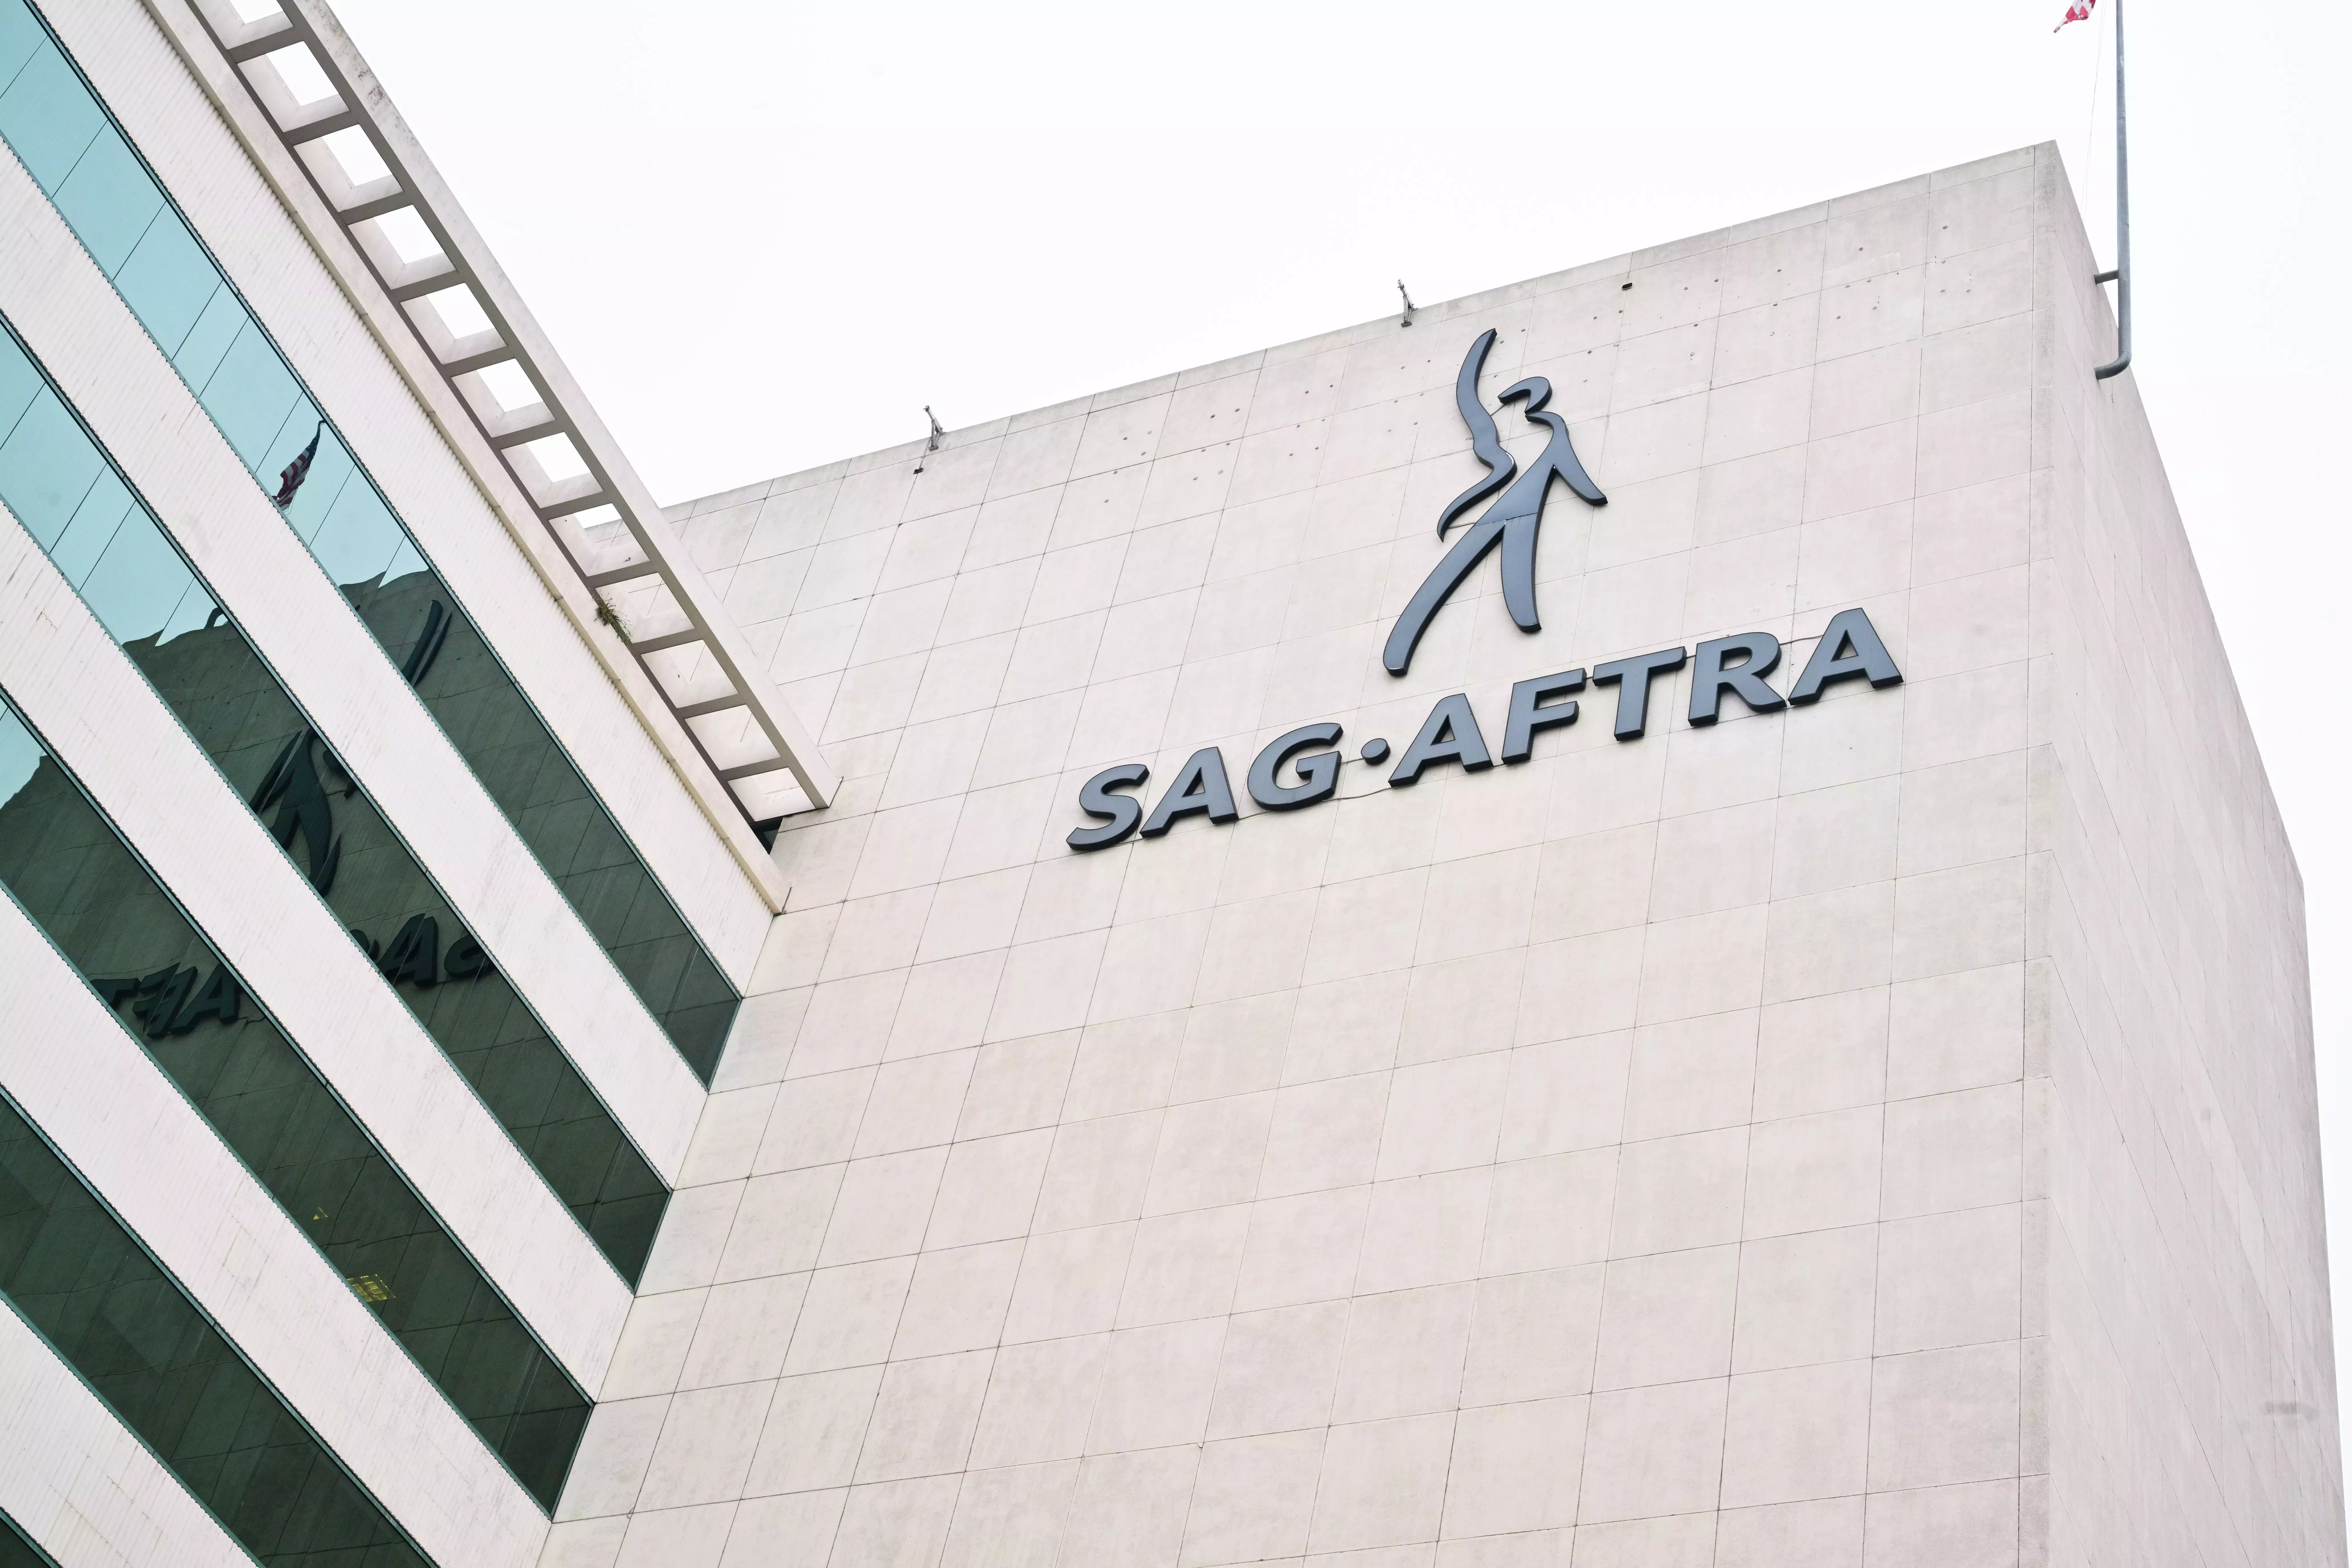 

	
		La huelga SAG-AFTRA pende de una diferencia de 480 millones de dólares entre actores y estudios por el pago del streaming
	
	